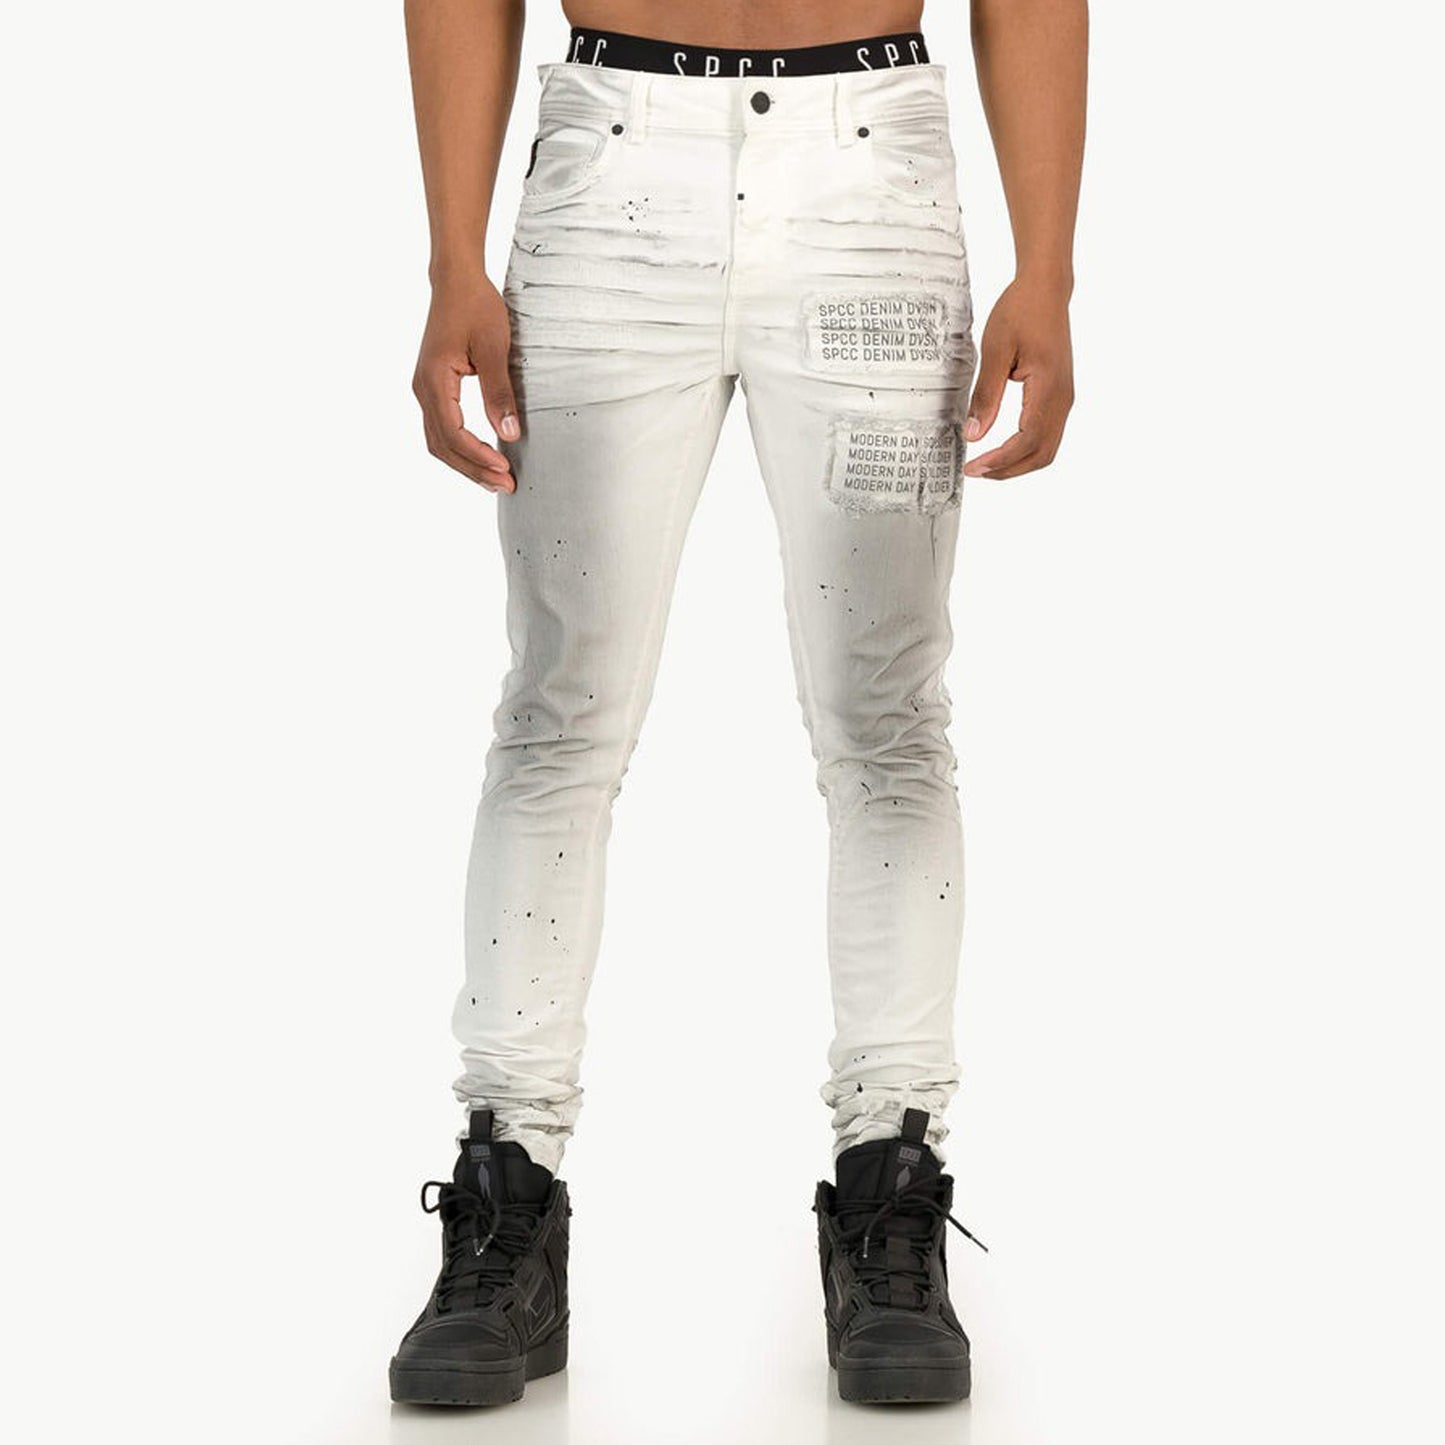 Ashfall Jeans  - White